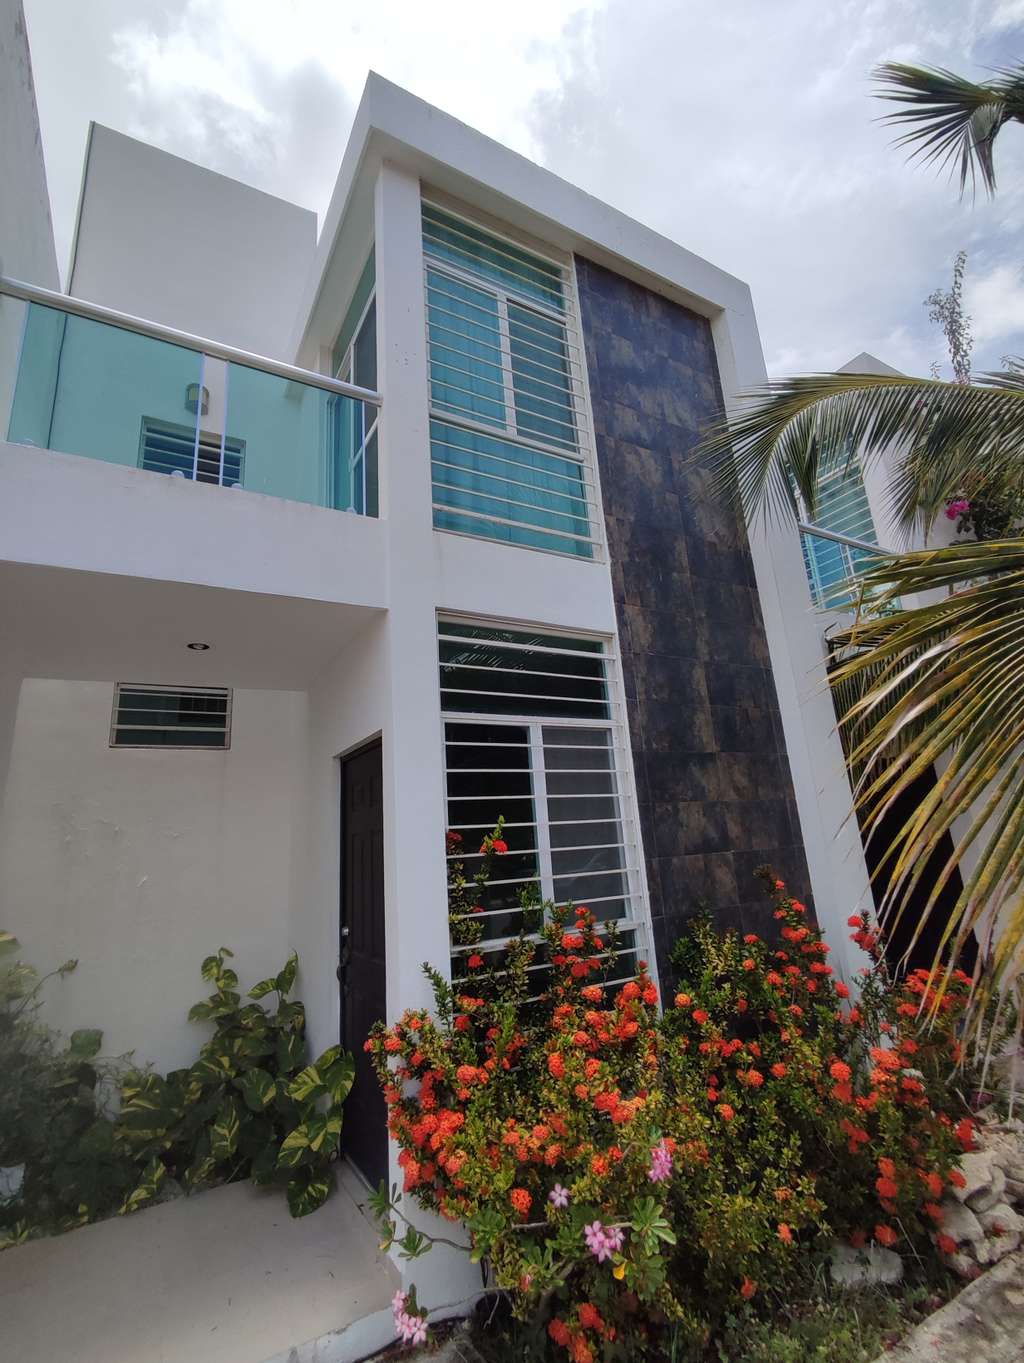 Townhouse de 2 recámaras - Cancún